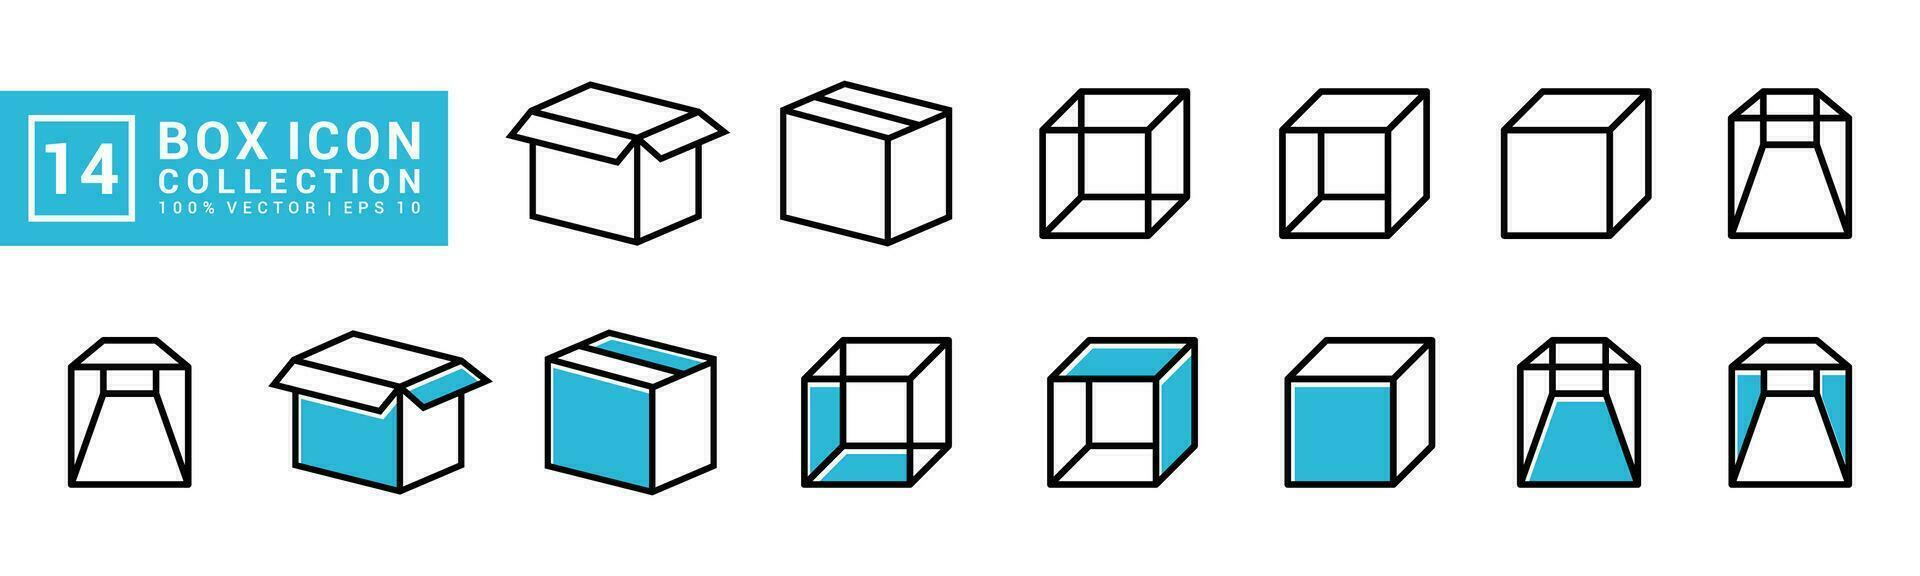 Vektor Grafik von Box Symbol Sammlung, editierbar und der Größe veränderbar Vektor eps 10.